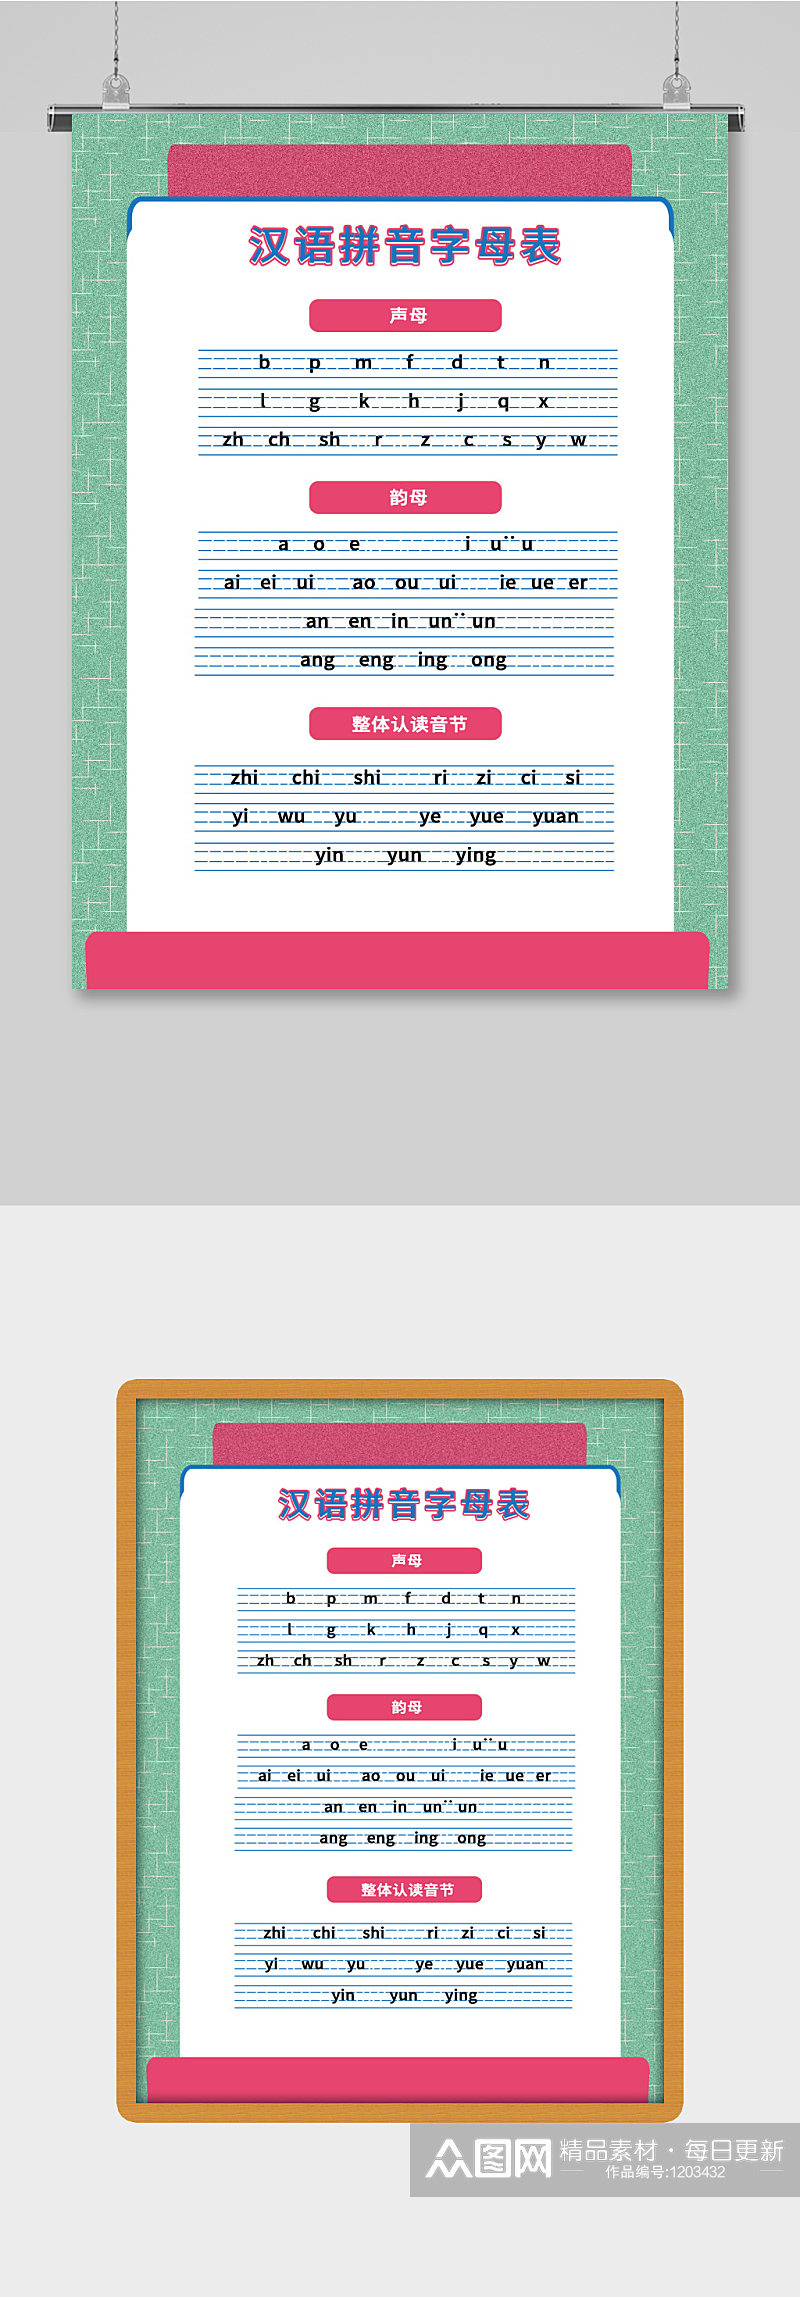 汉语拼音字母表海报素材